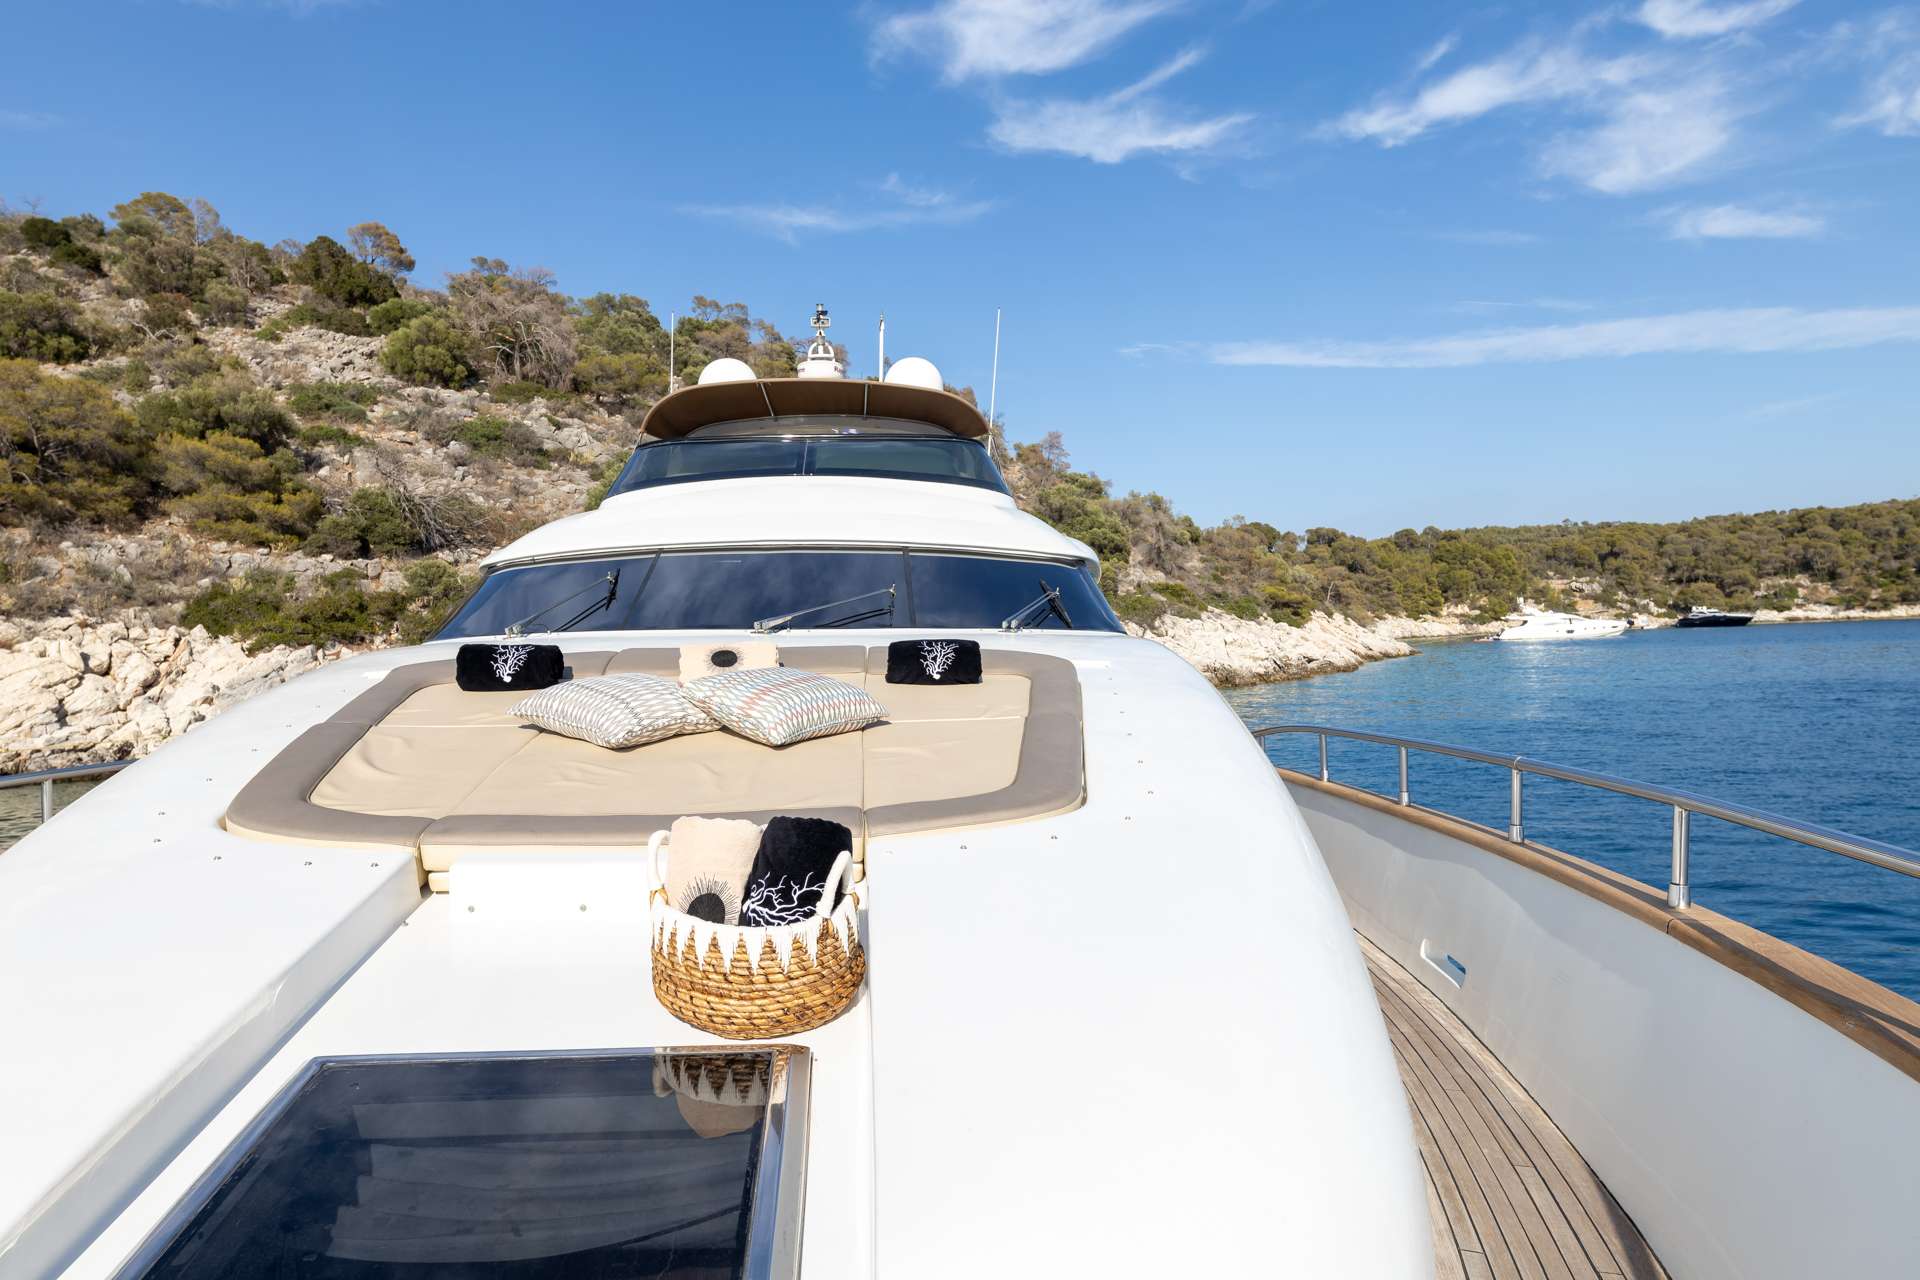 COOKIE - Motor Boat Charter Turkey & Boat hire in Greece & Turkey 5